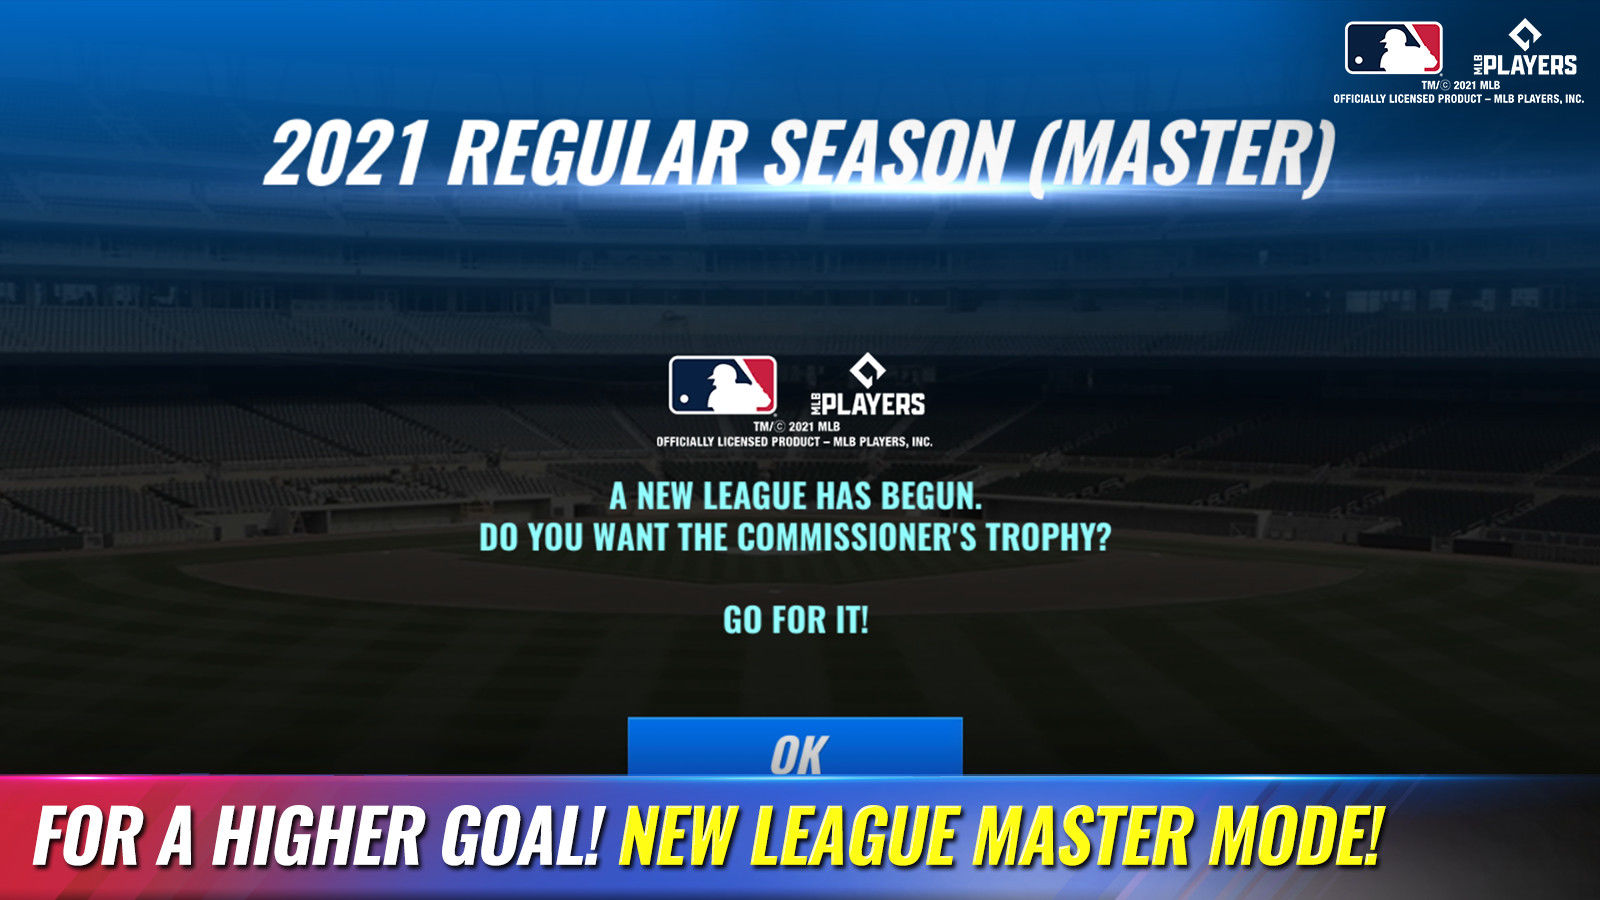 Screenshot of MLB 9 Innings 21